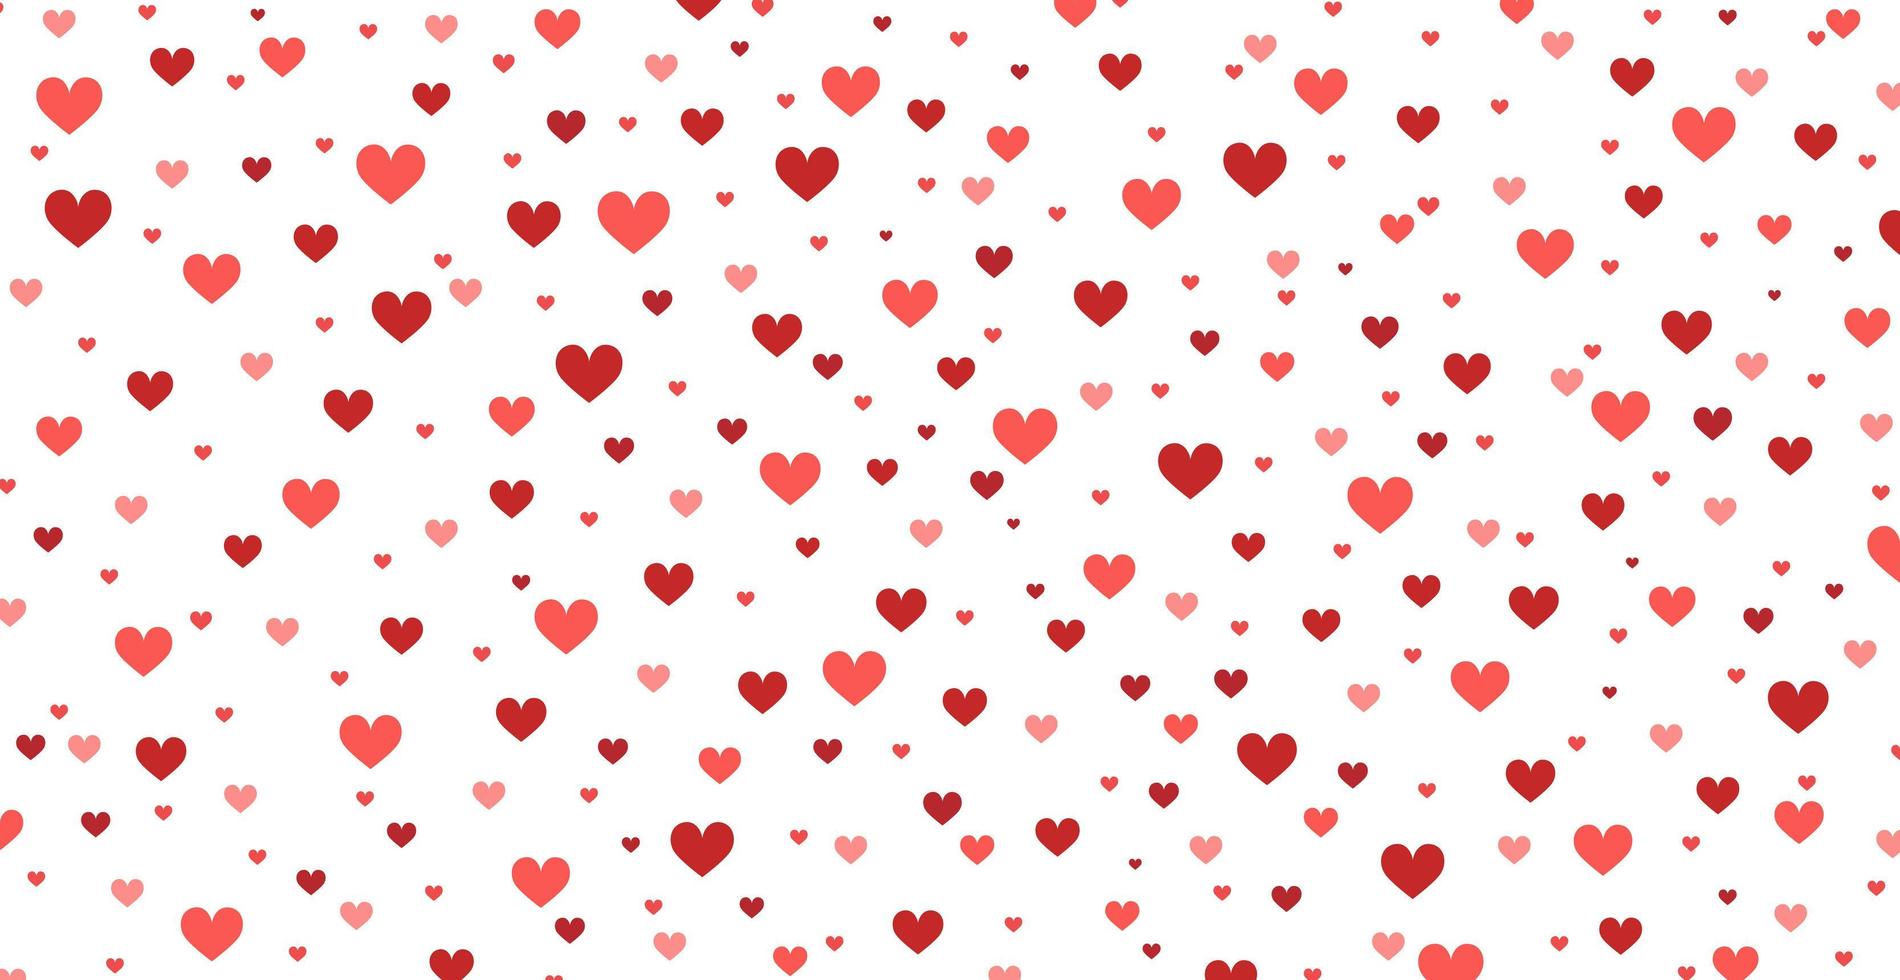 padrão panorâmico de fundo branco com muitos corações vermelhos - vetor